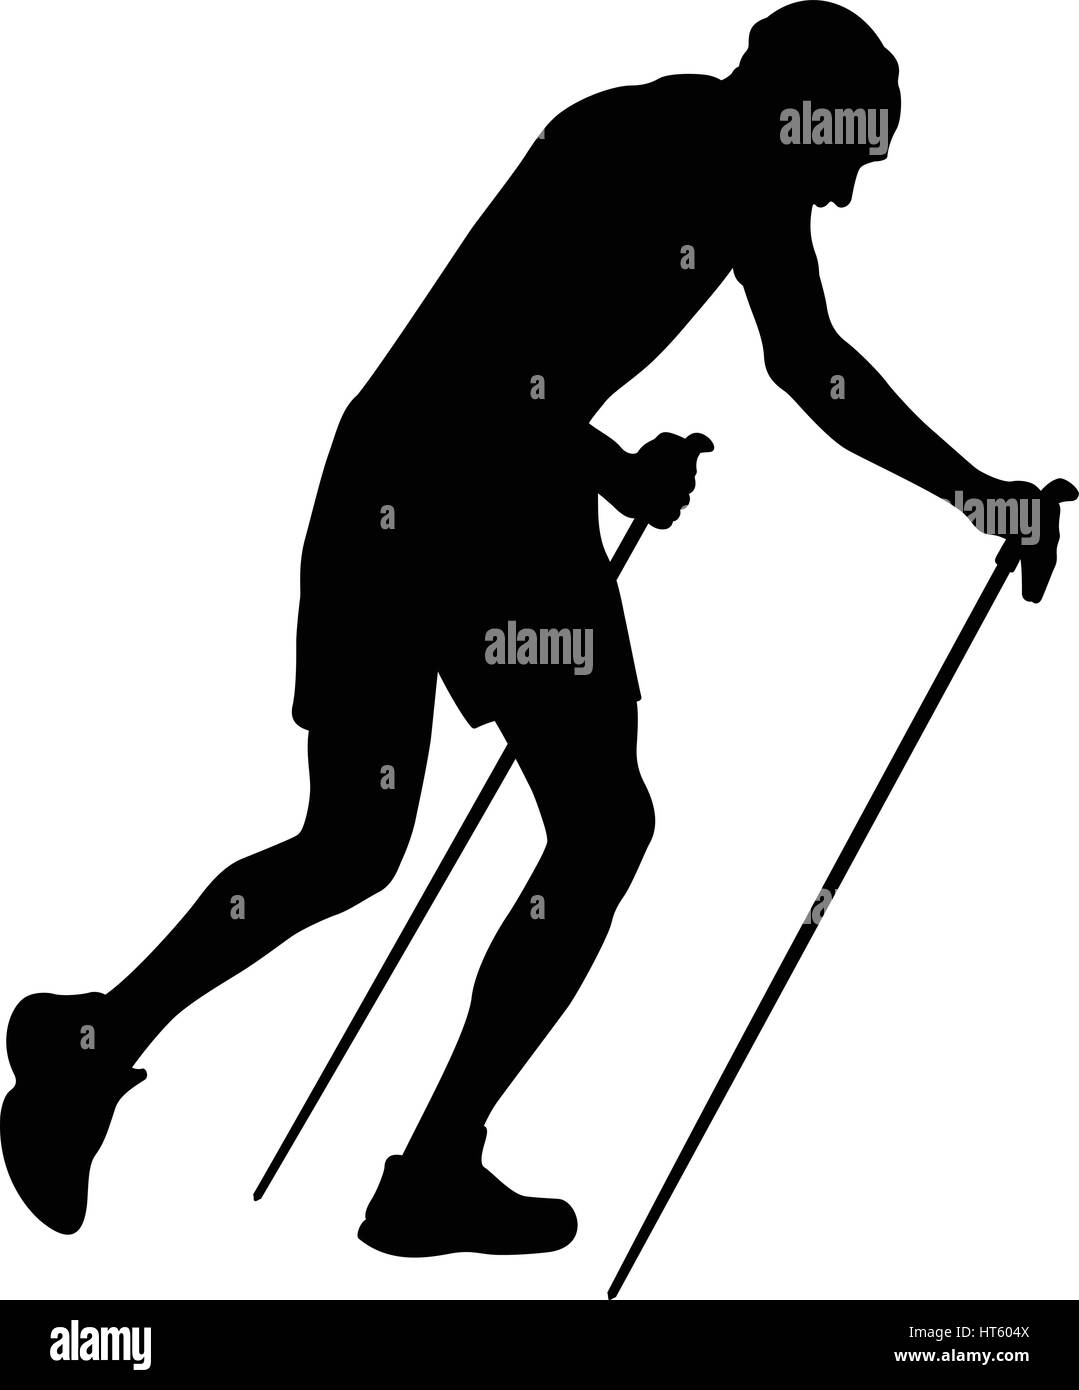 Homme coureur avec les bâtons de trekking running uphill silhouette noire Illustration de Vecteur